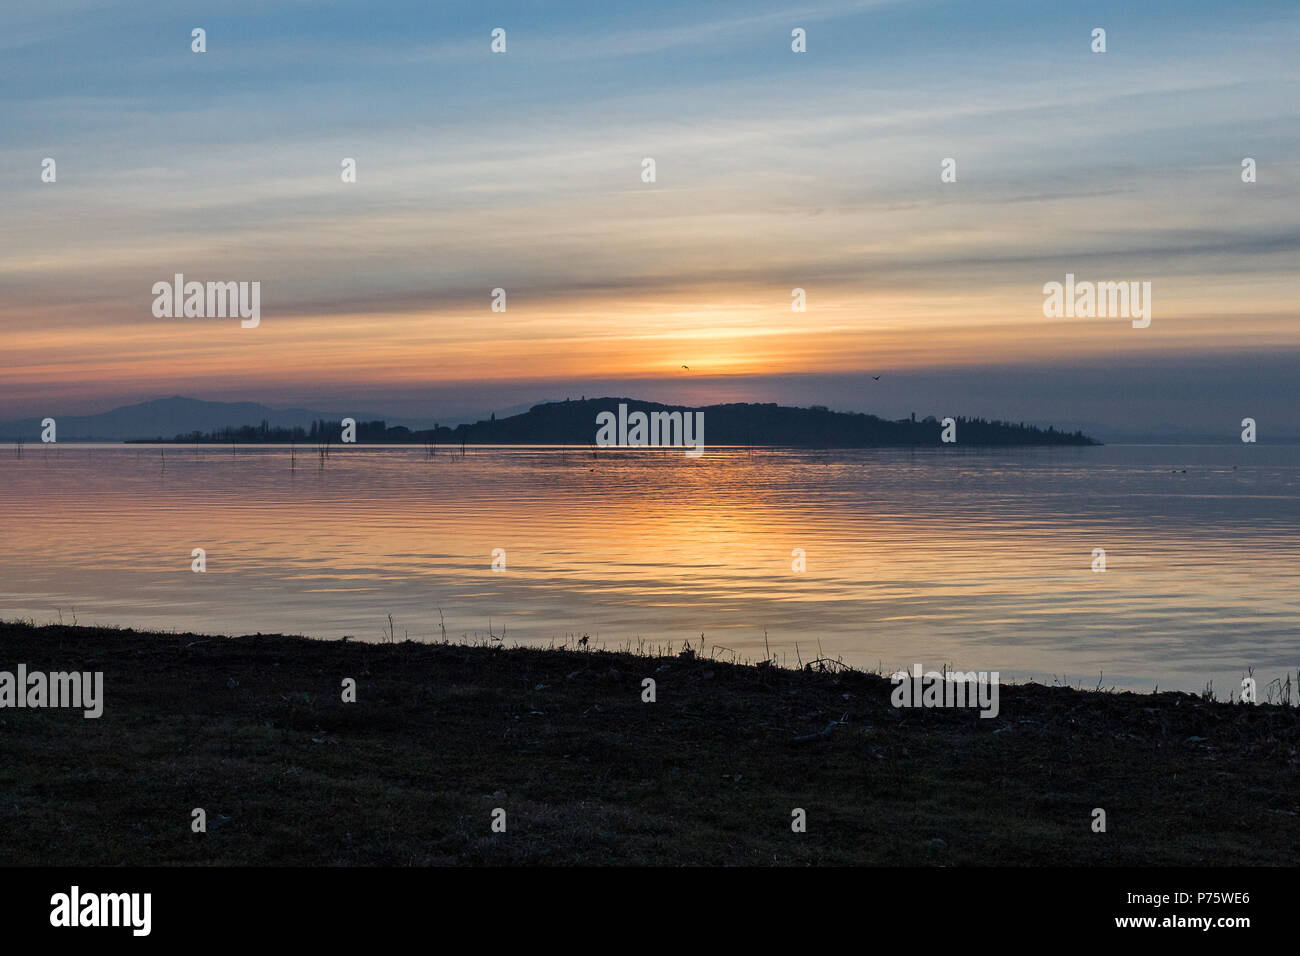 Una ripresa di un tramonto su un lago, con il sole che scende dietro un'isola Foto Stock